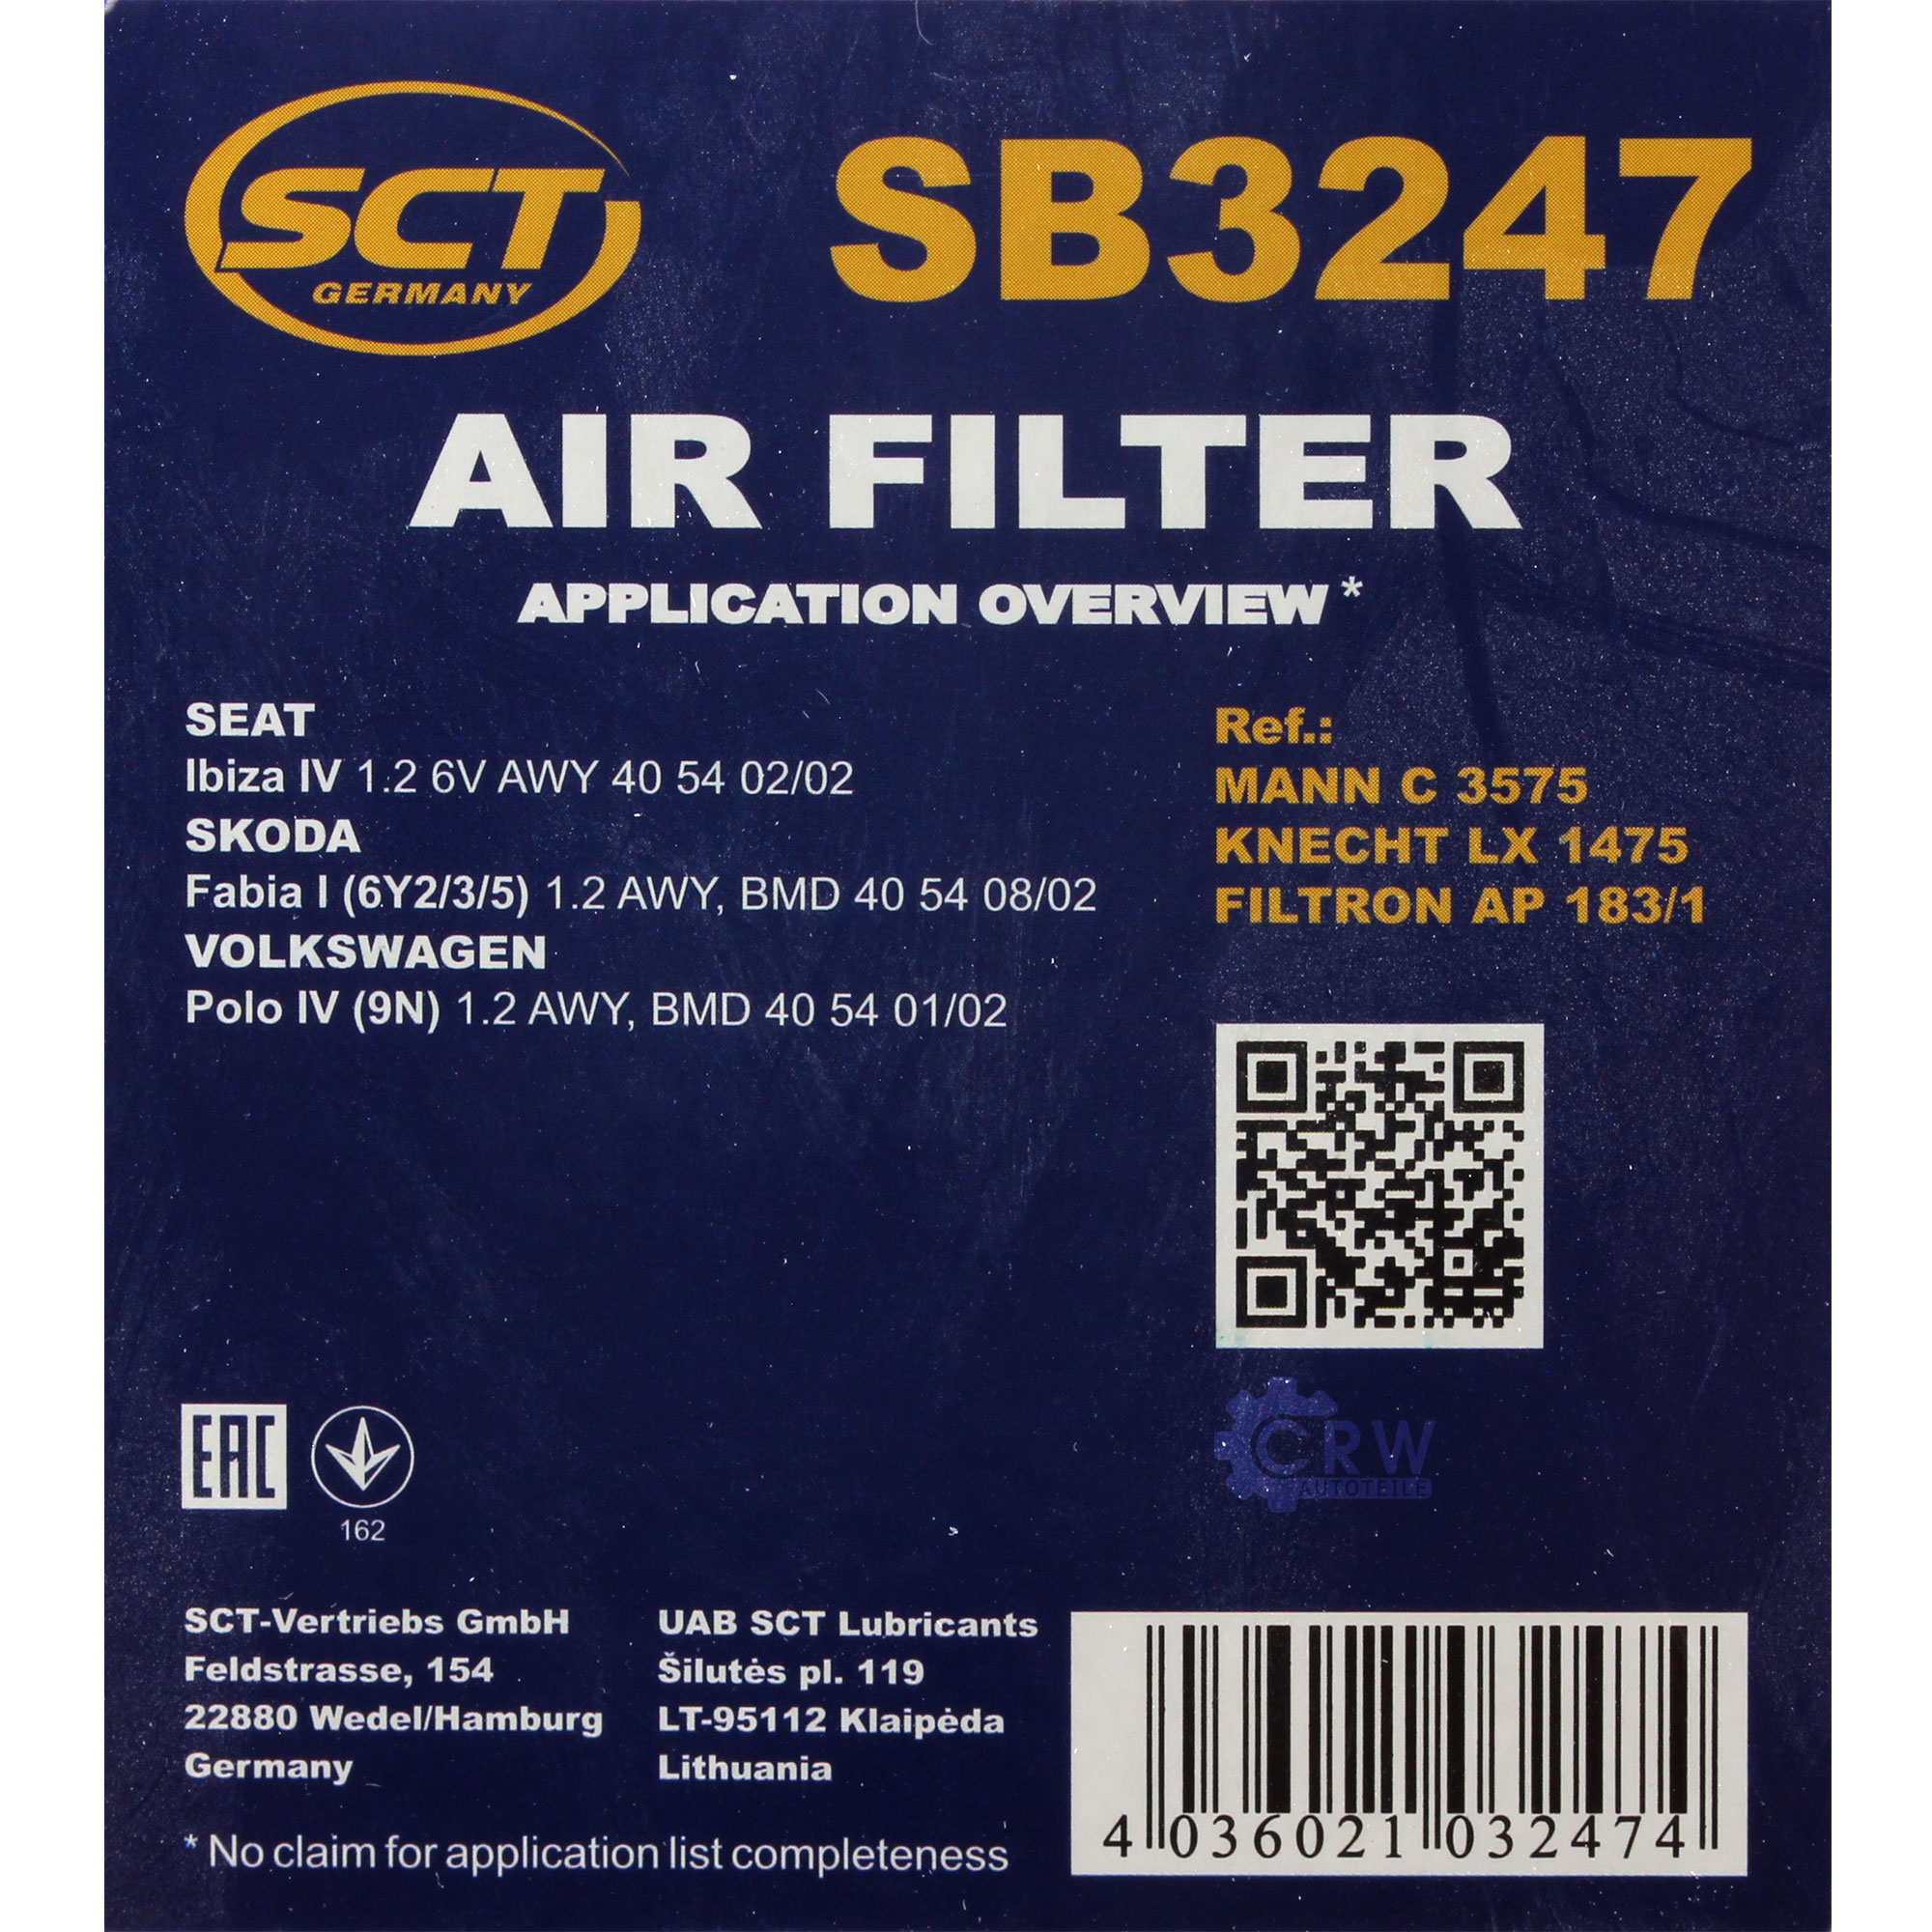 SCT Luftfilter Motorluftfilter SB 3247 Air Filter